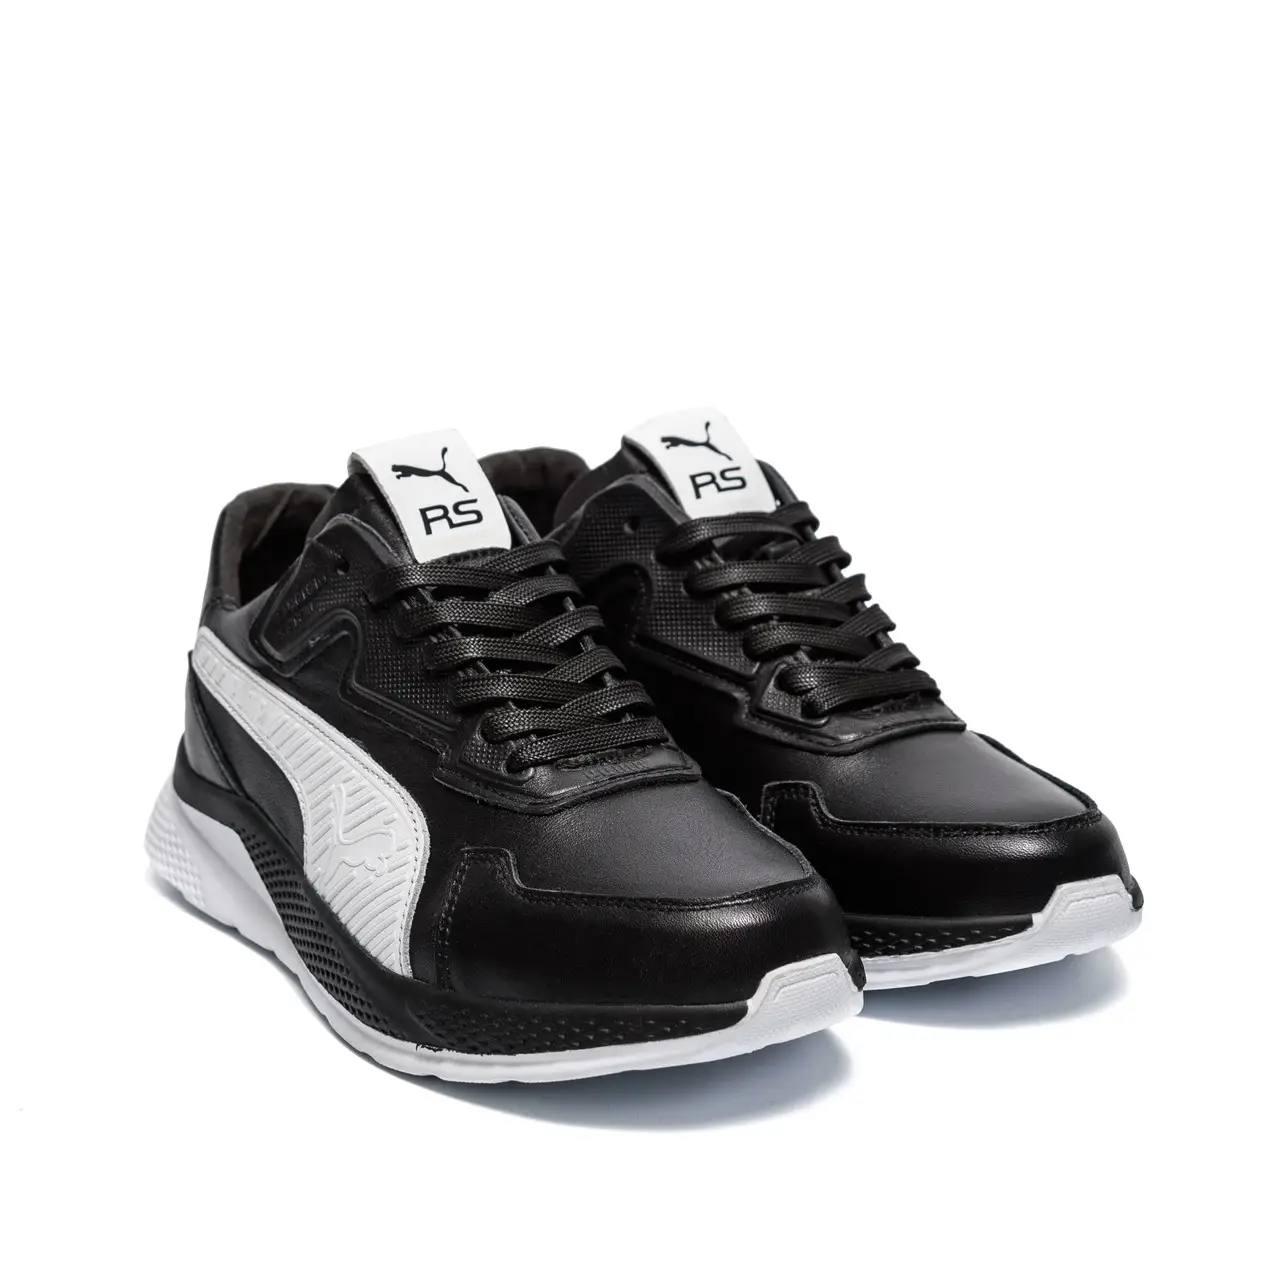 Кросівки чоловічі шкіряні чорні з білим весна/осінь Pm RS Black 42